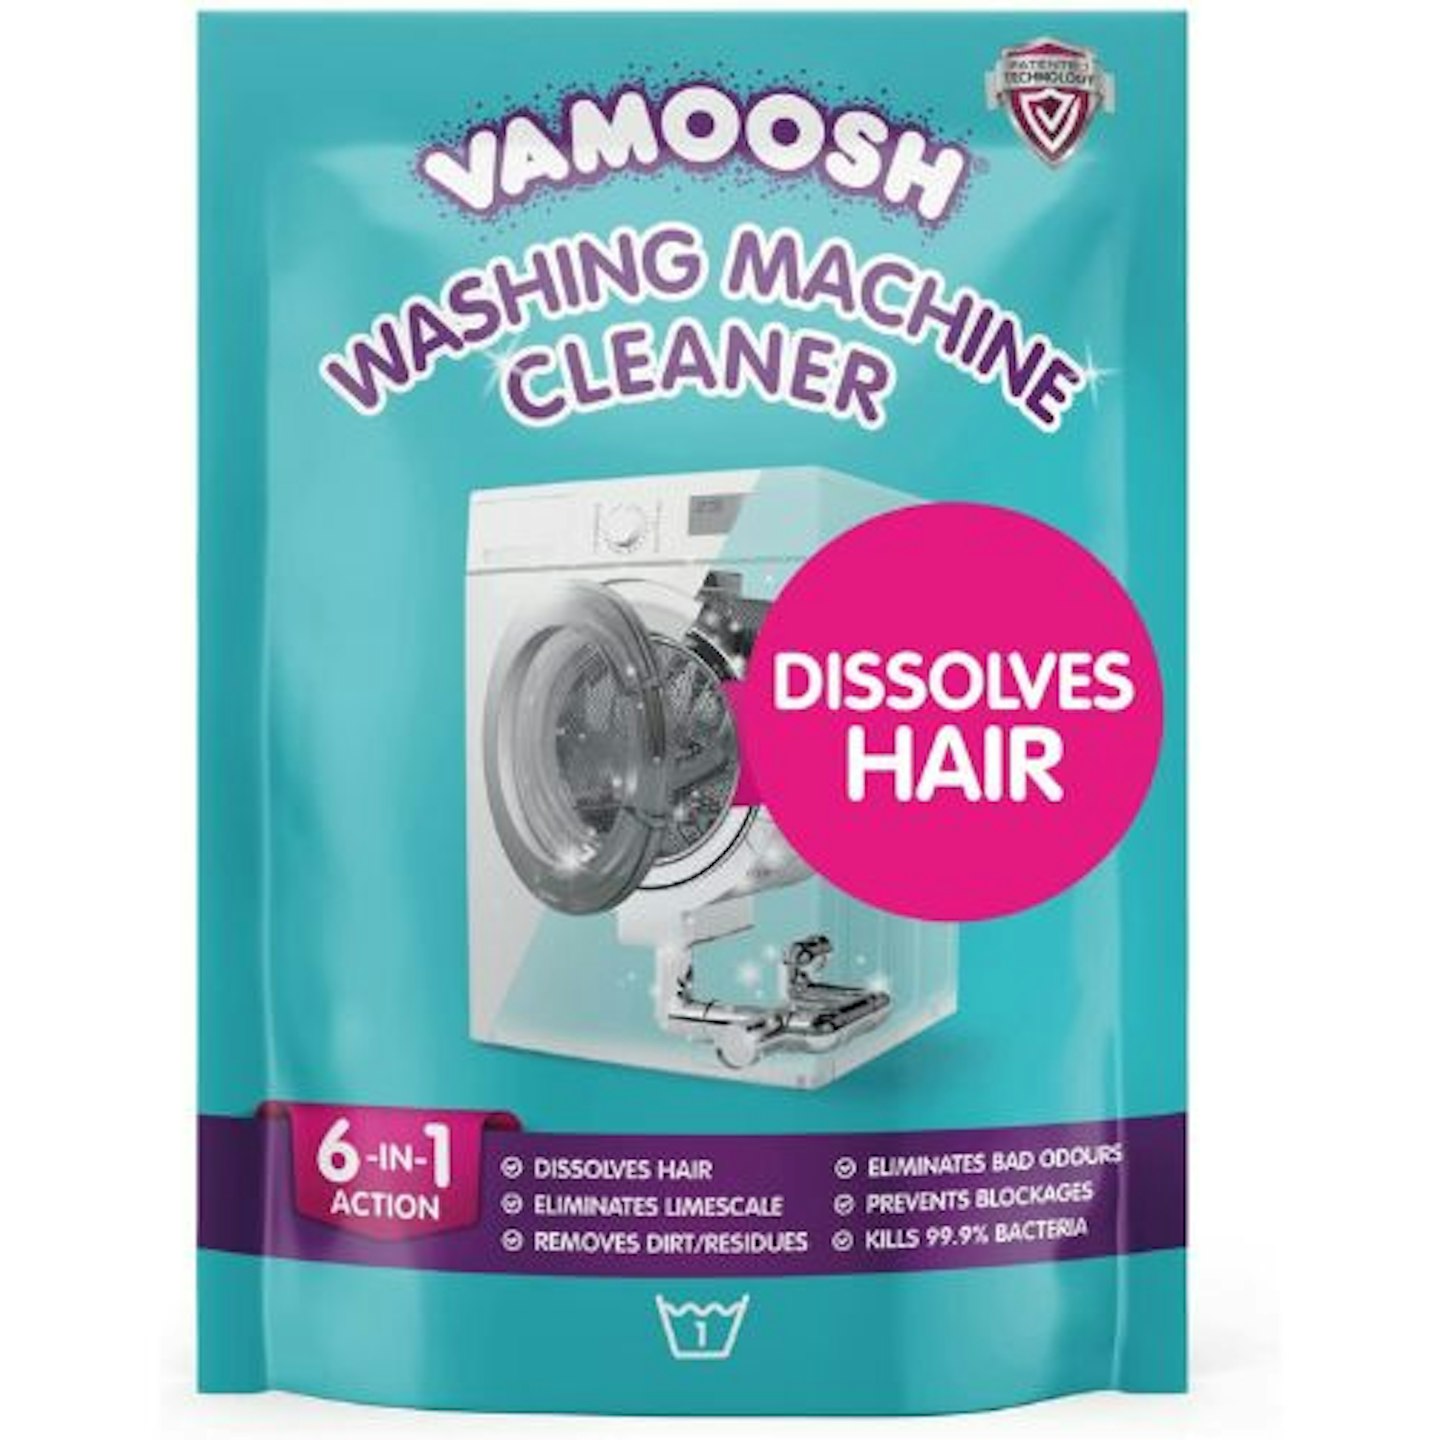 Vamoosh 6-in-1 Washing Machine Cleaner